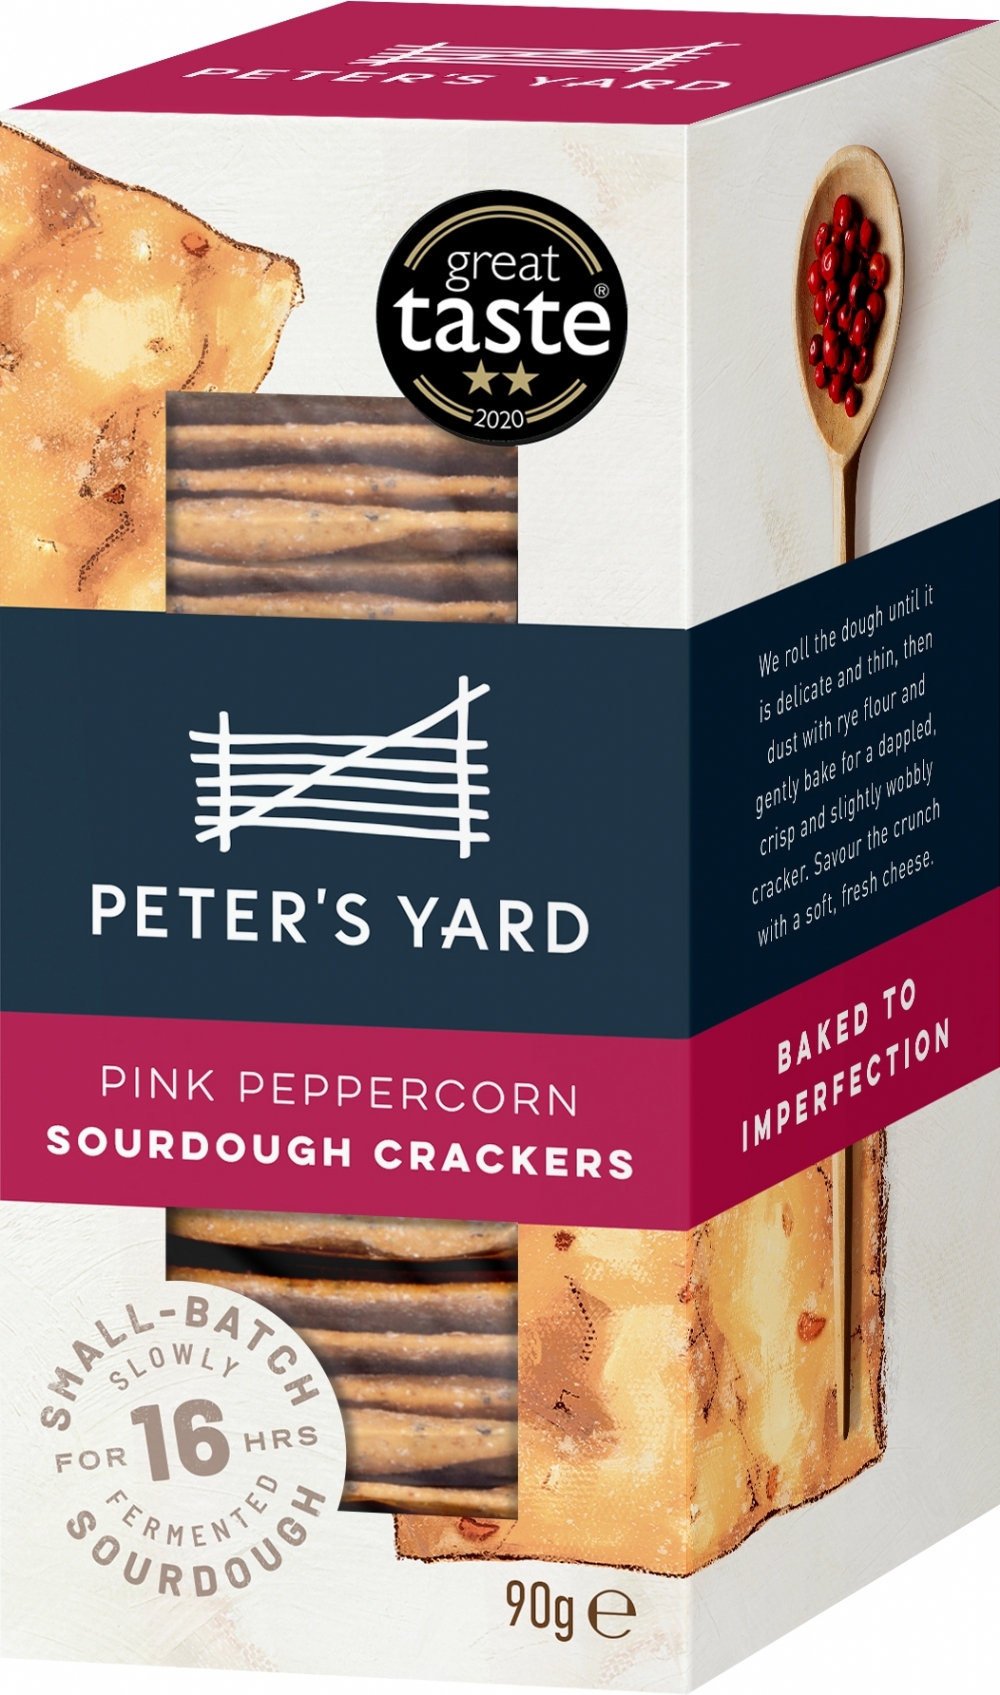 PETER'S YARD Pink Peppercorn Sourdough Crackers 90g